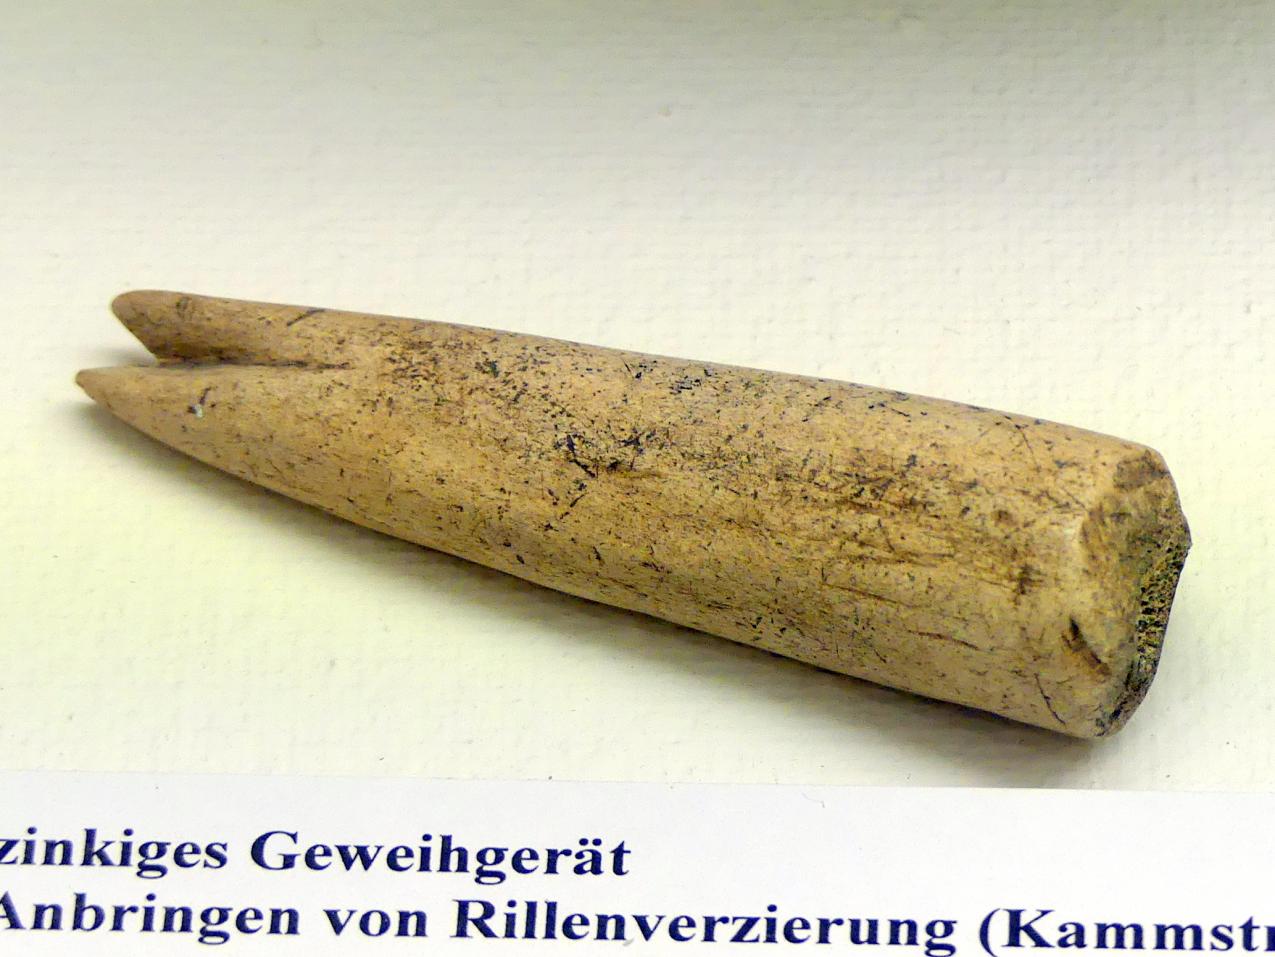 Zweizinkiges Geweihgerät, Spätlatènezeit D, 700 - 100 v. Chr., Bild 1/2